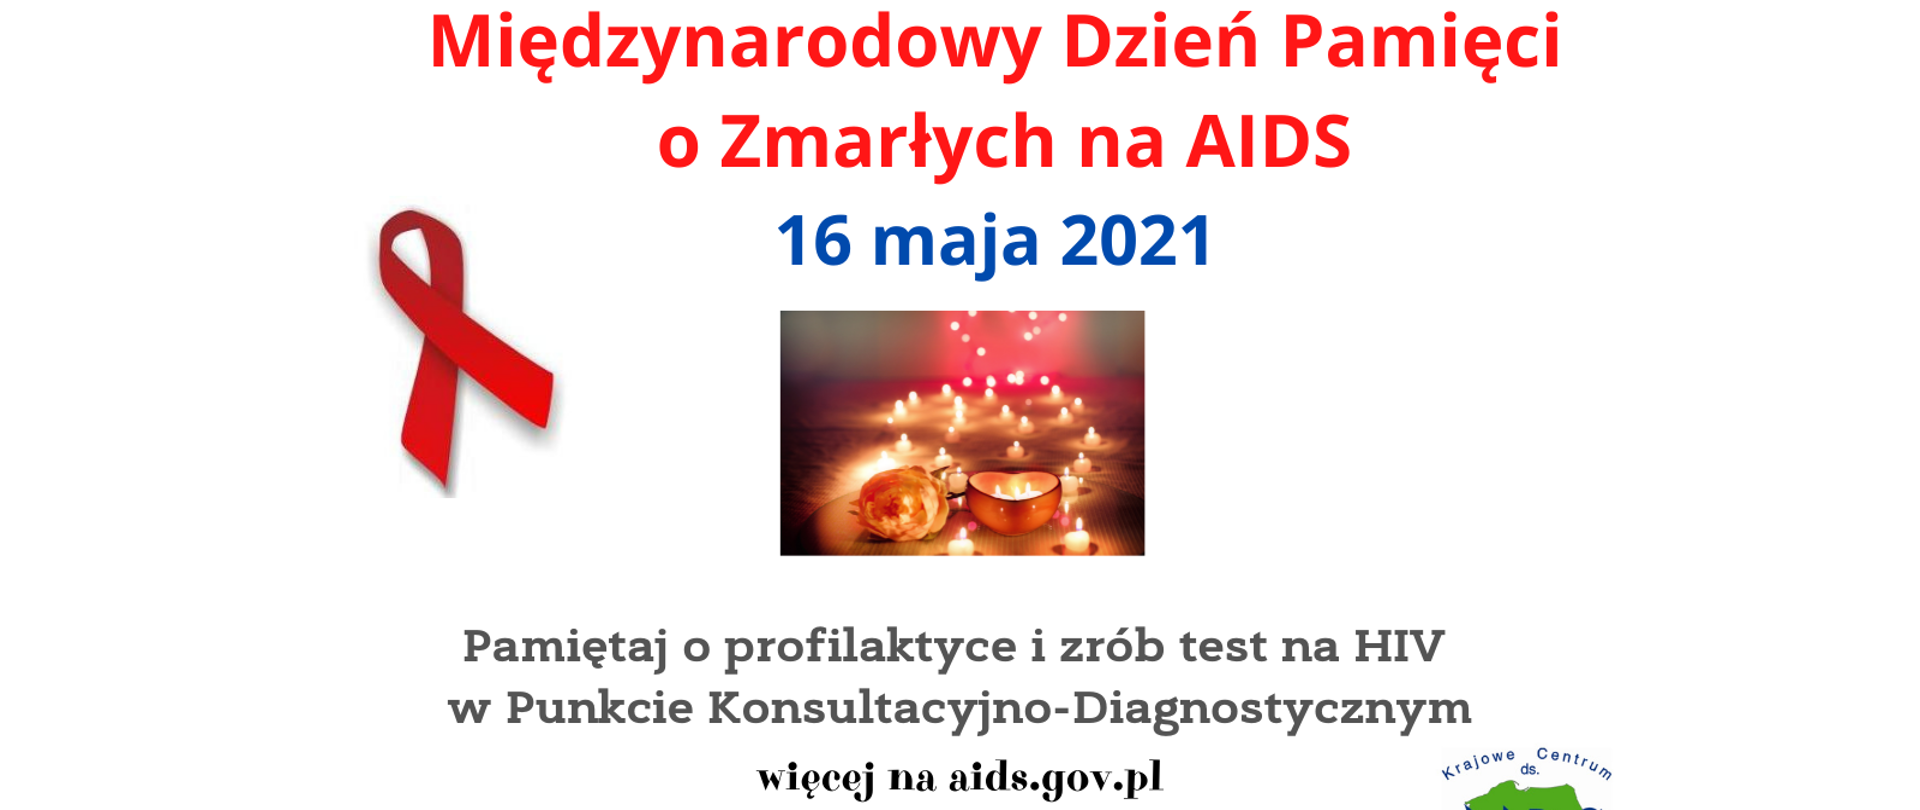 baner upamiętniający Międzynarodowy Dzień Pamięci o zmarłych na AIDS